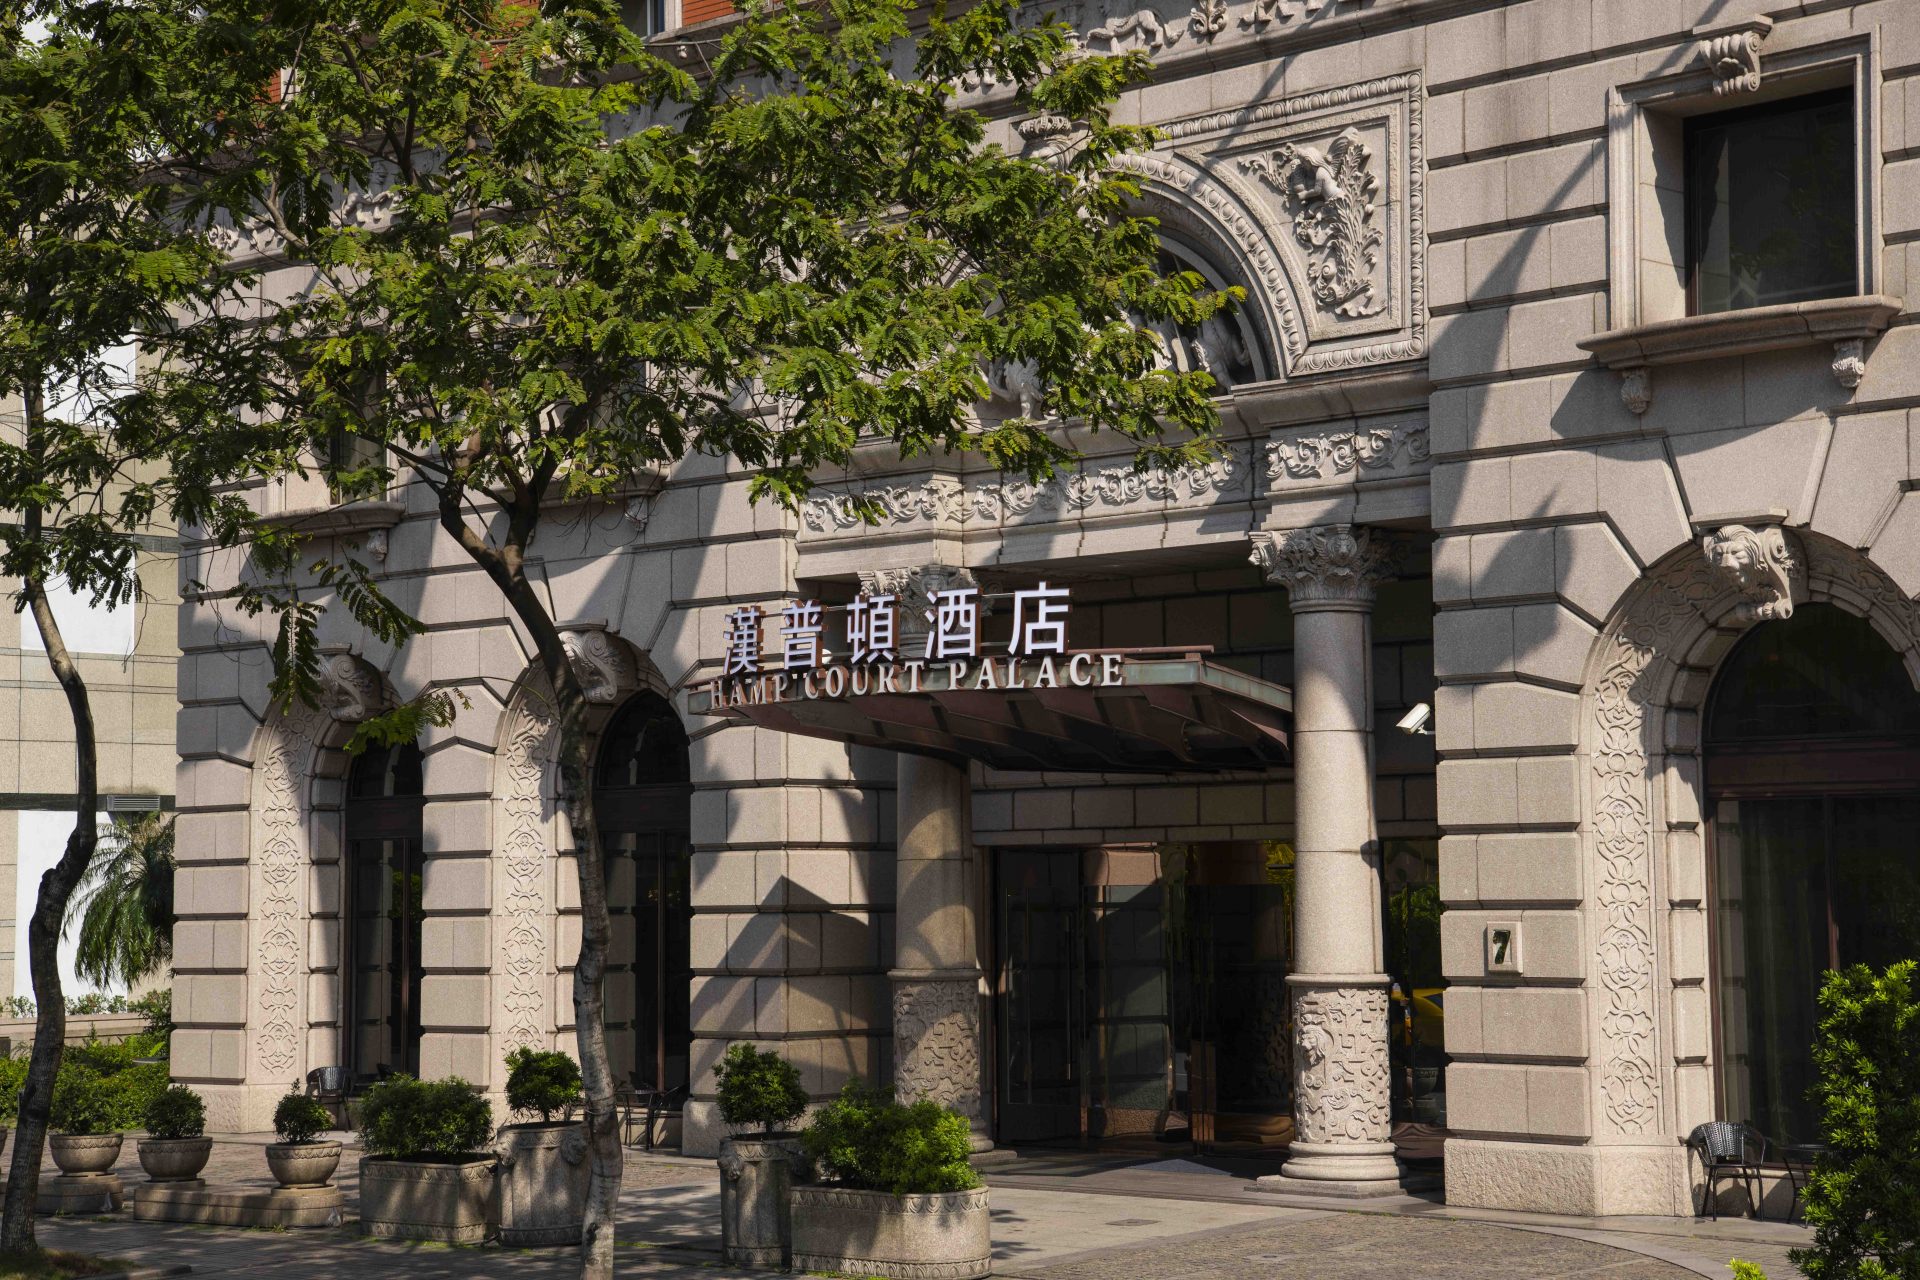 台北漢普頓酒店 Hamp Court Palace Taipei